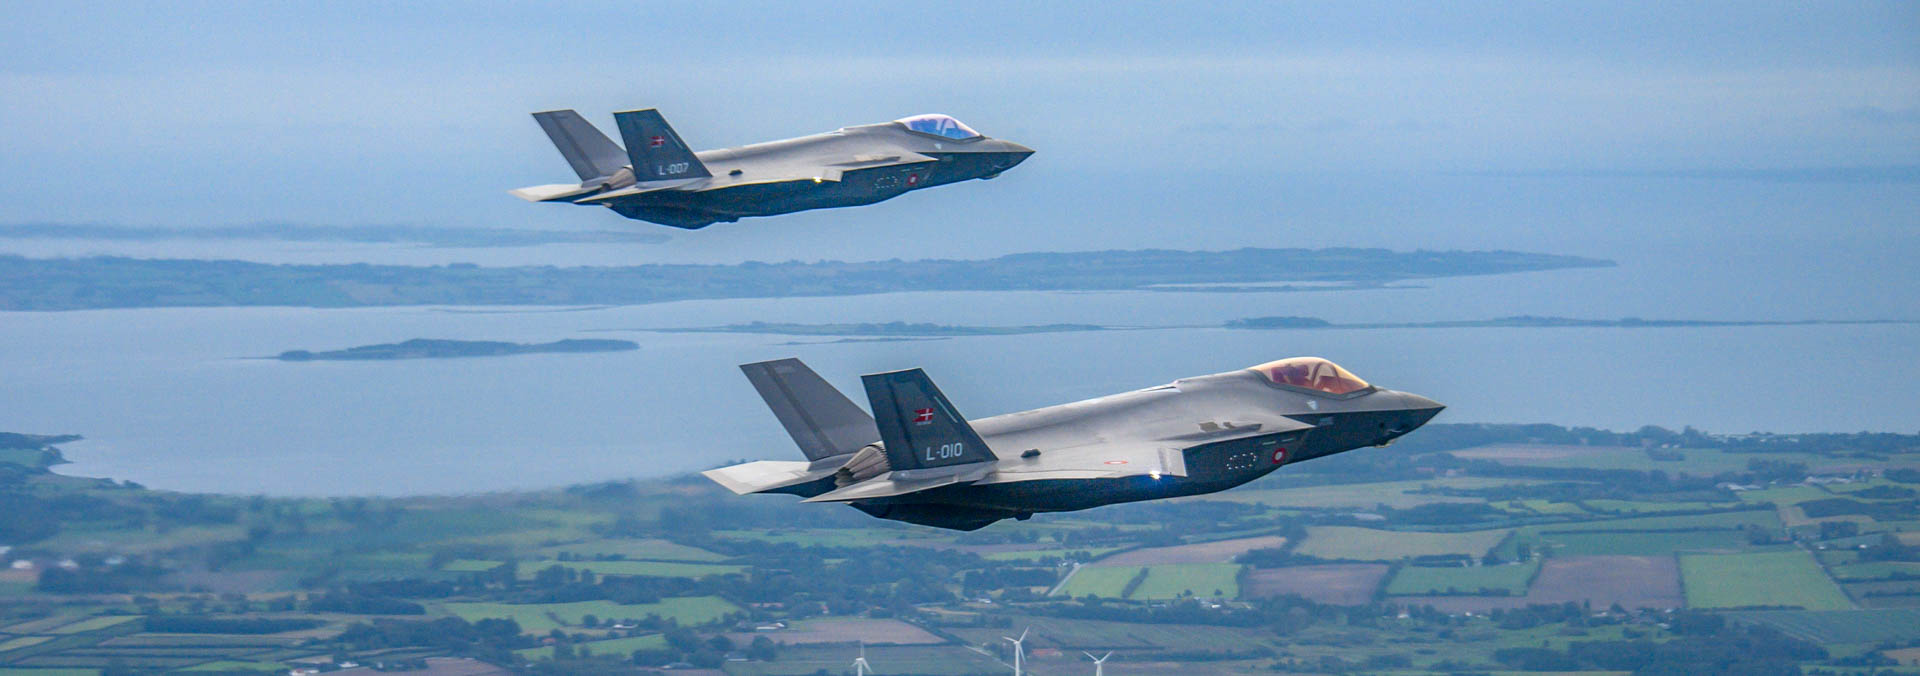 F-35 på himlen over Danmark